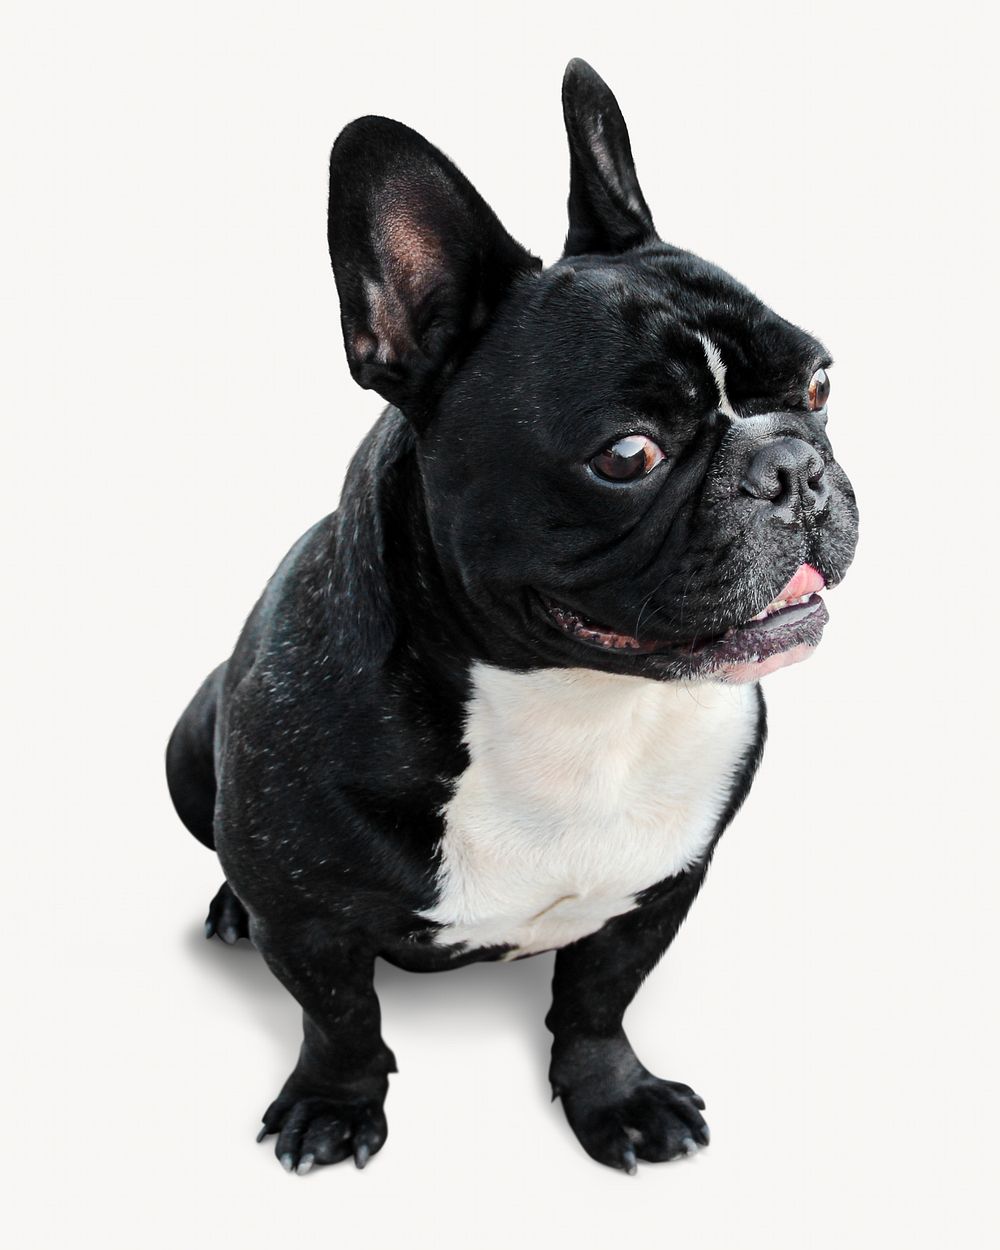 Bulldog puppy, pet animal isolated image